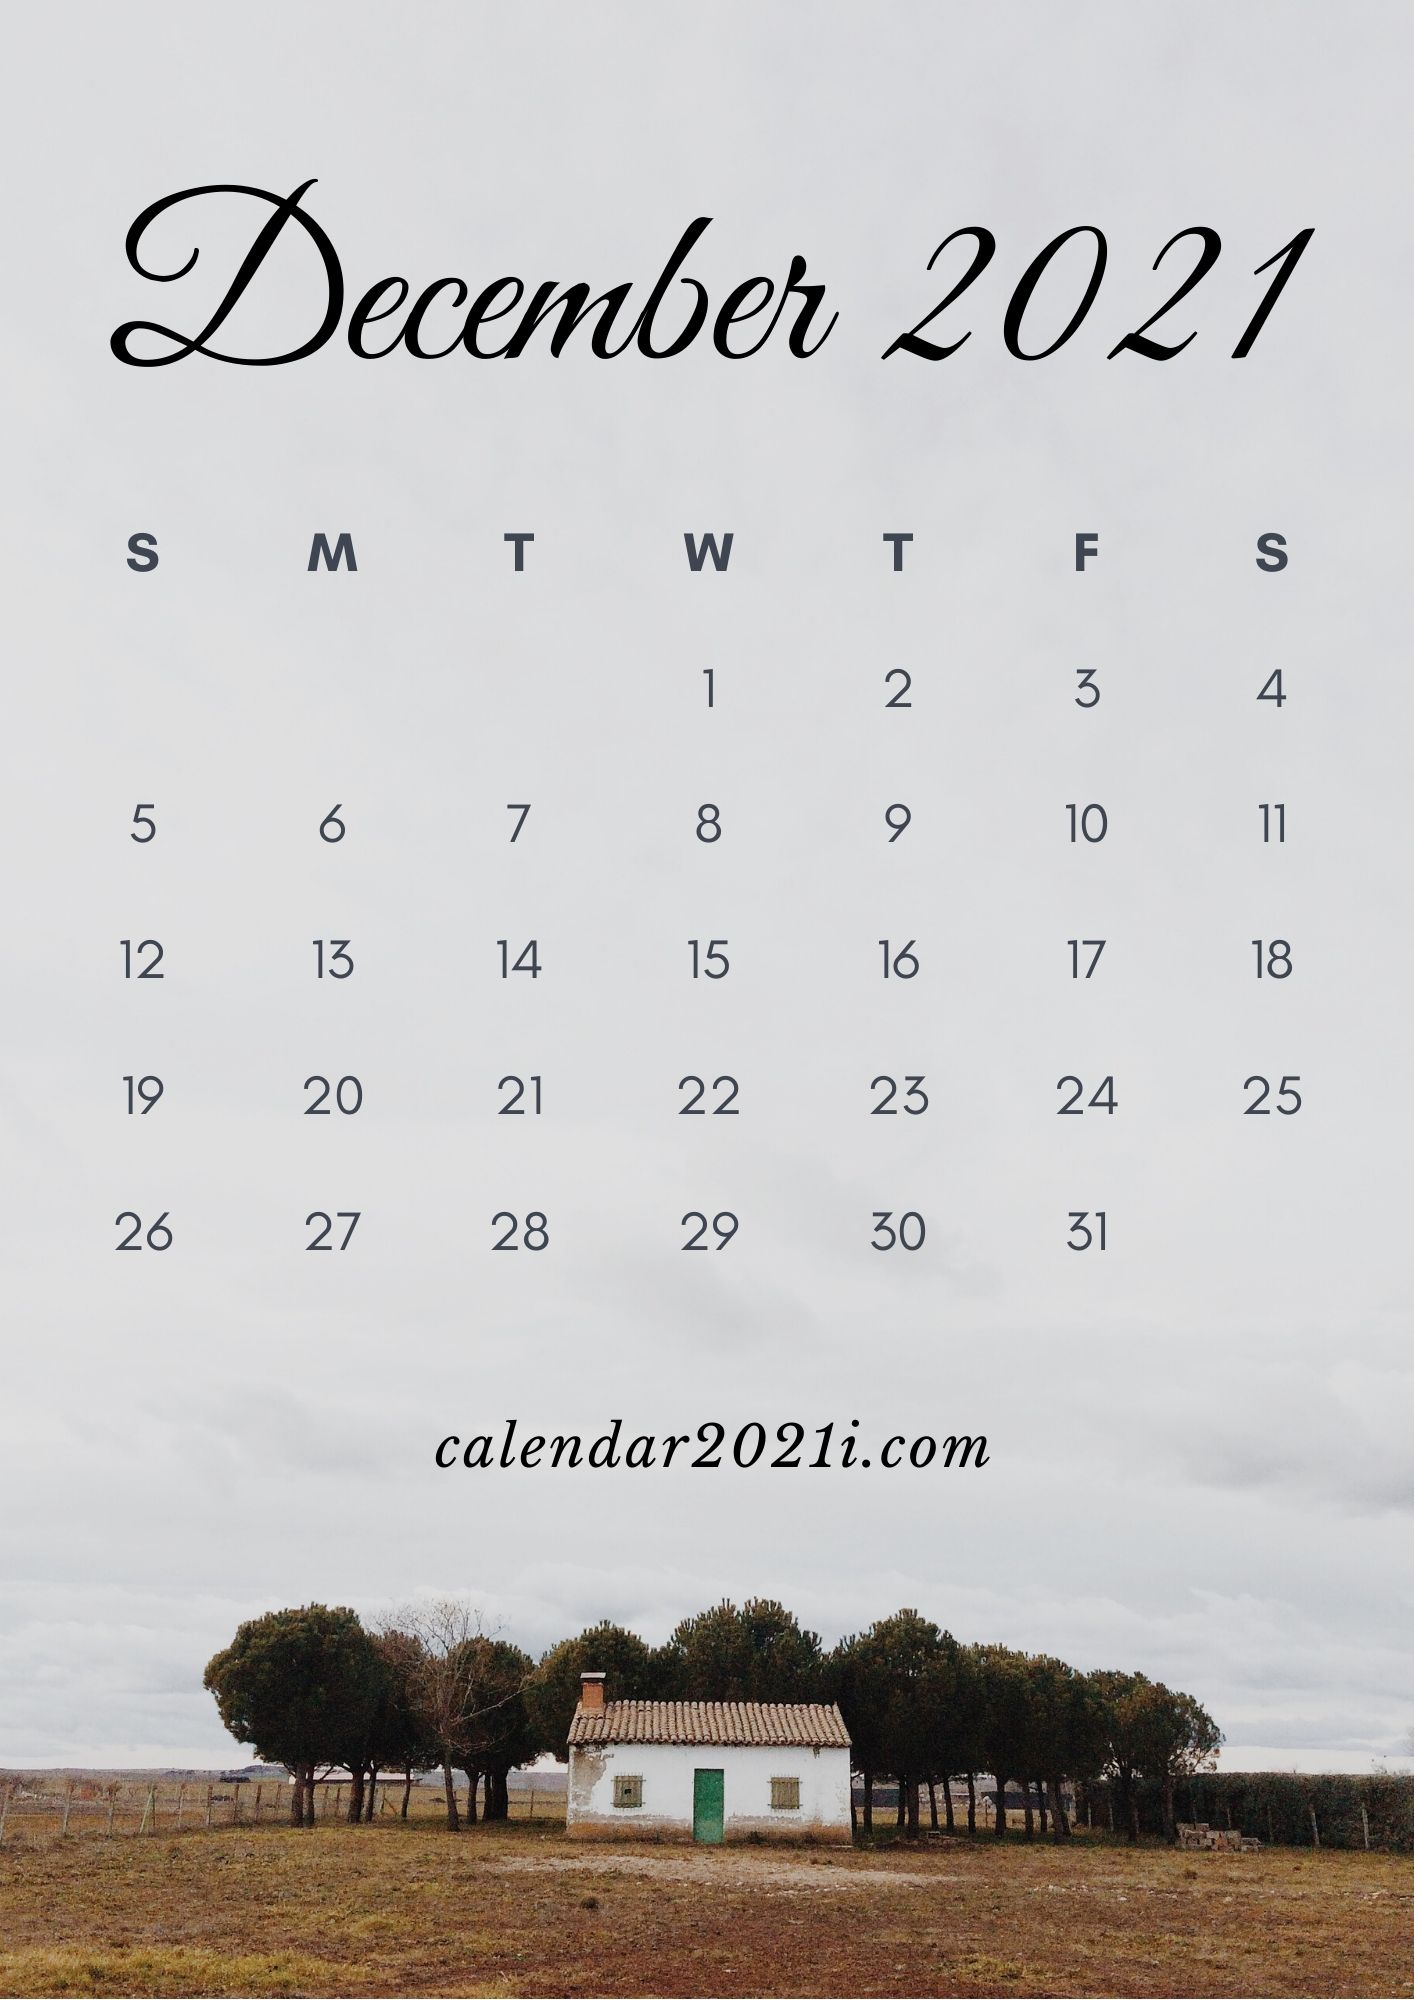 December 2021 iPhone Calendar Wallpaper